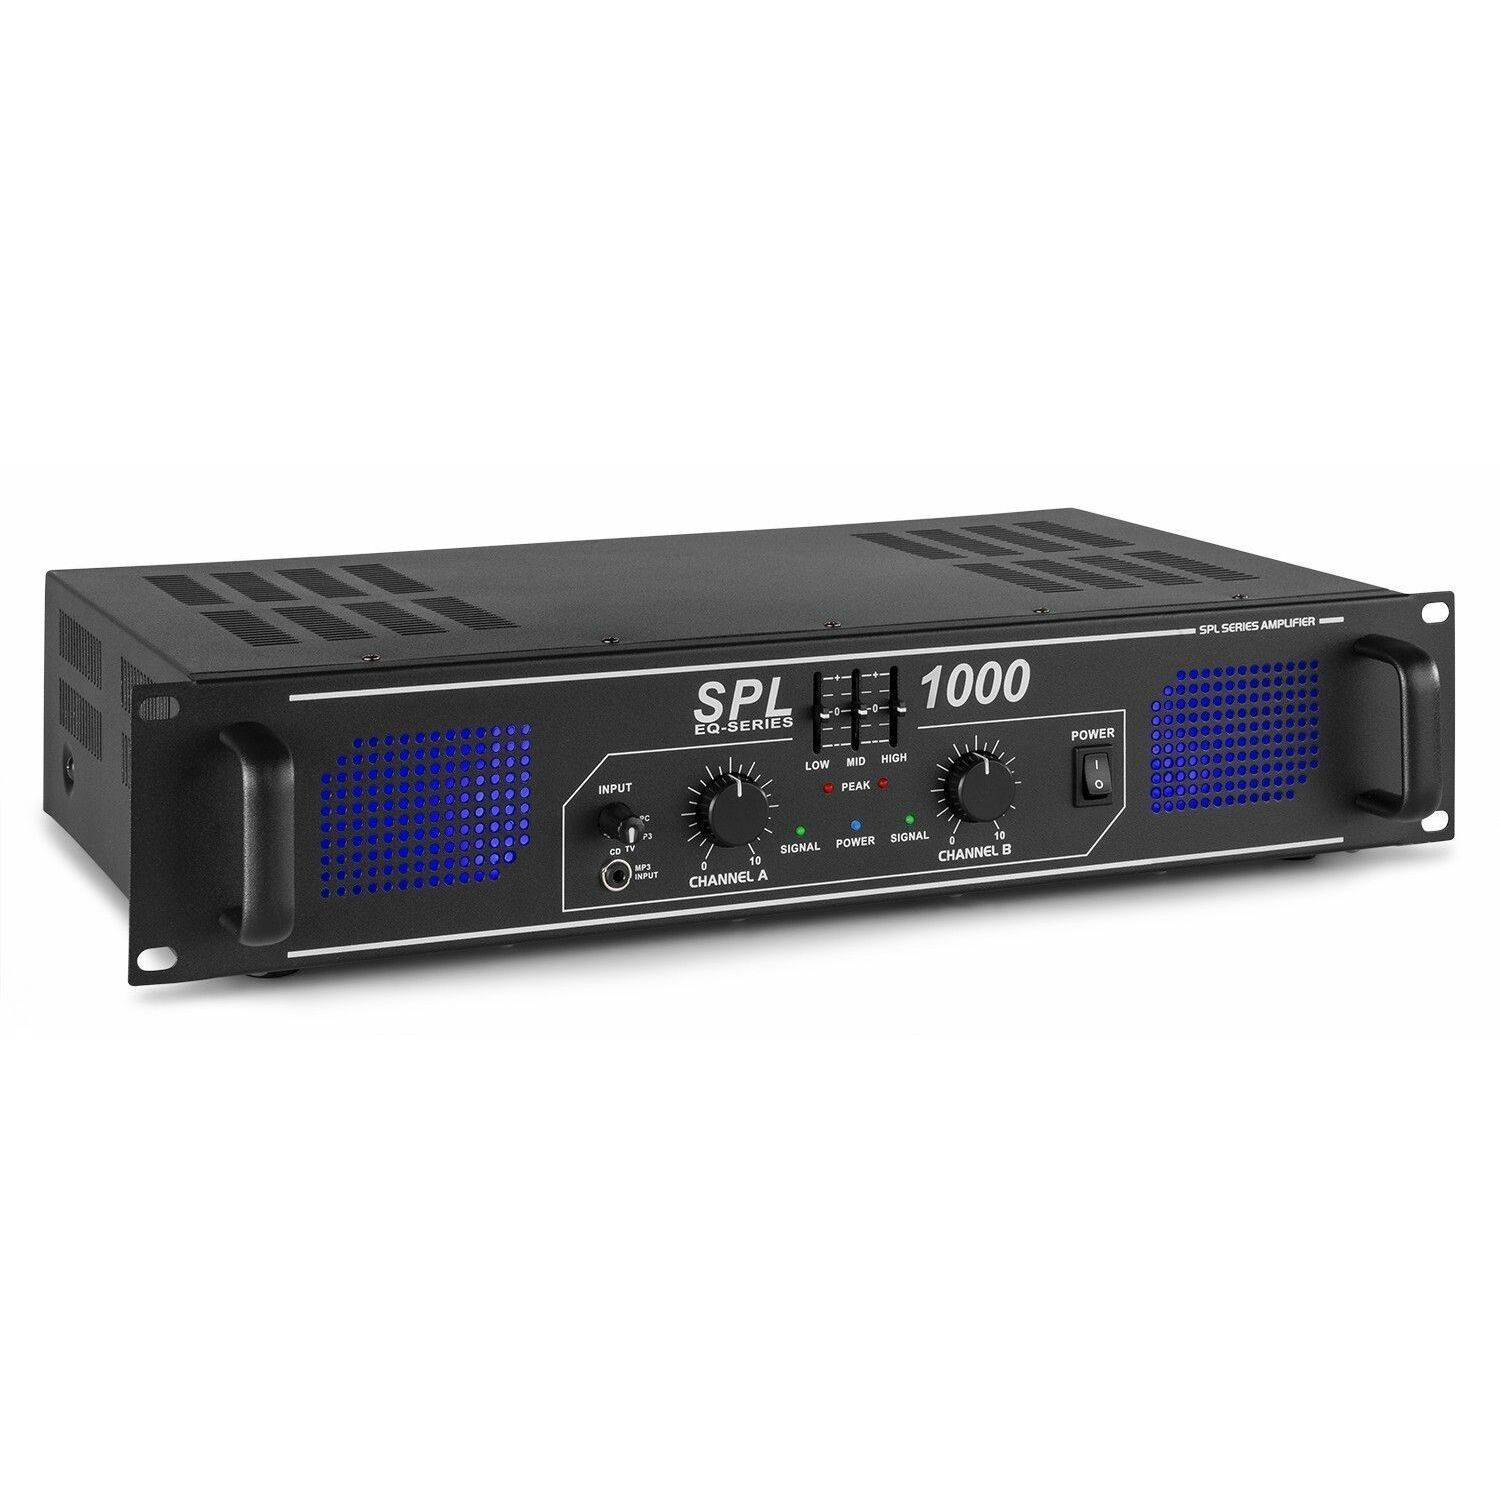 A1000 - Amplificateur RF de puissance 1000 Watts - Acquitek